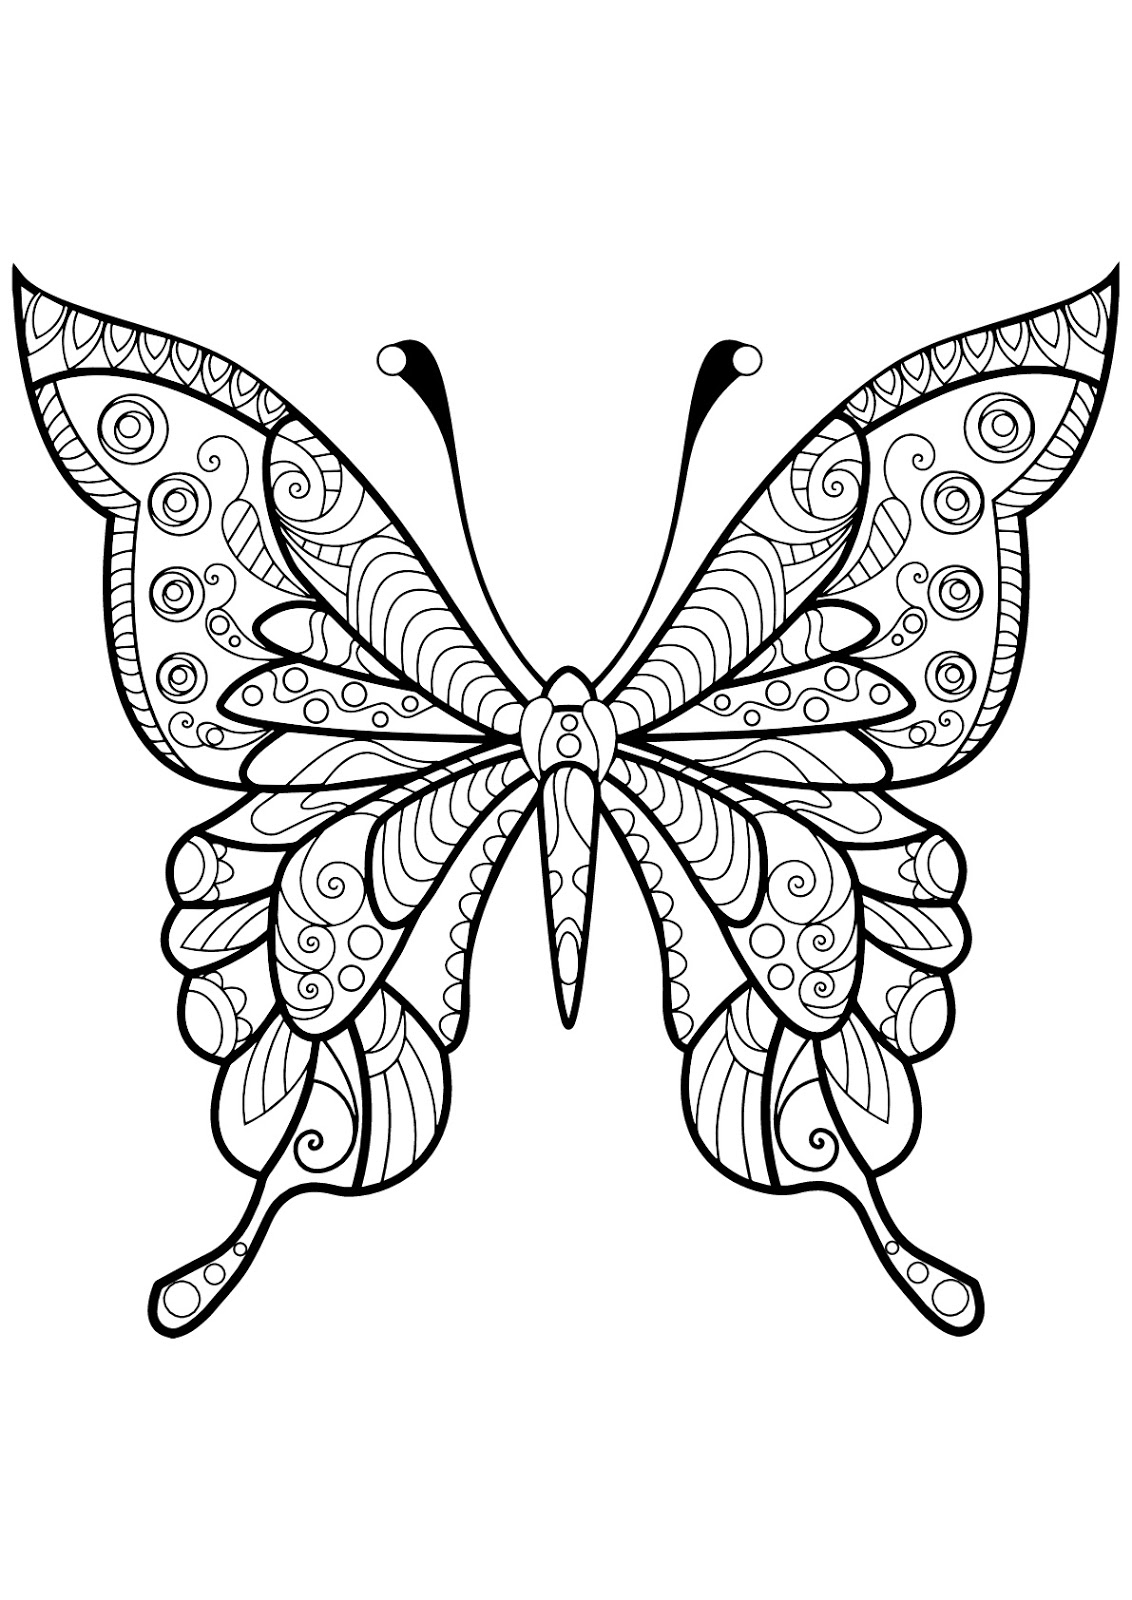 Tranh tô màu con bướm cách điệu bằng đường nét